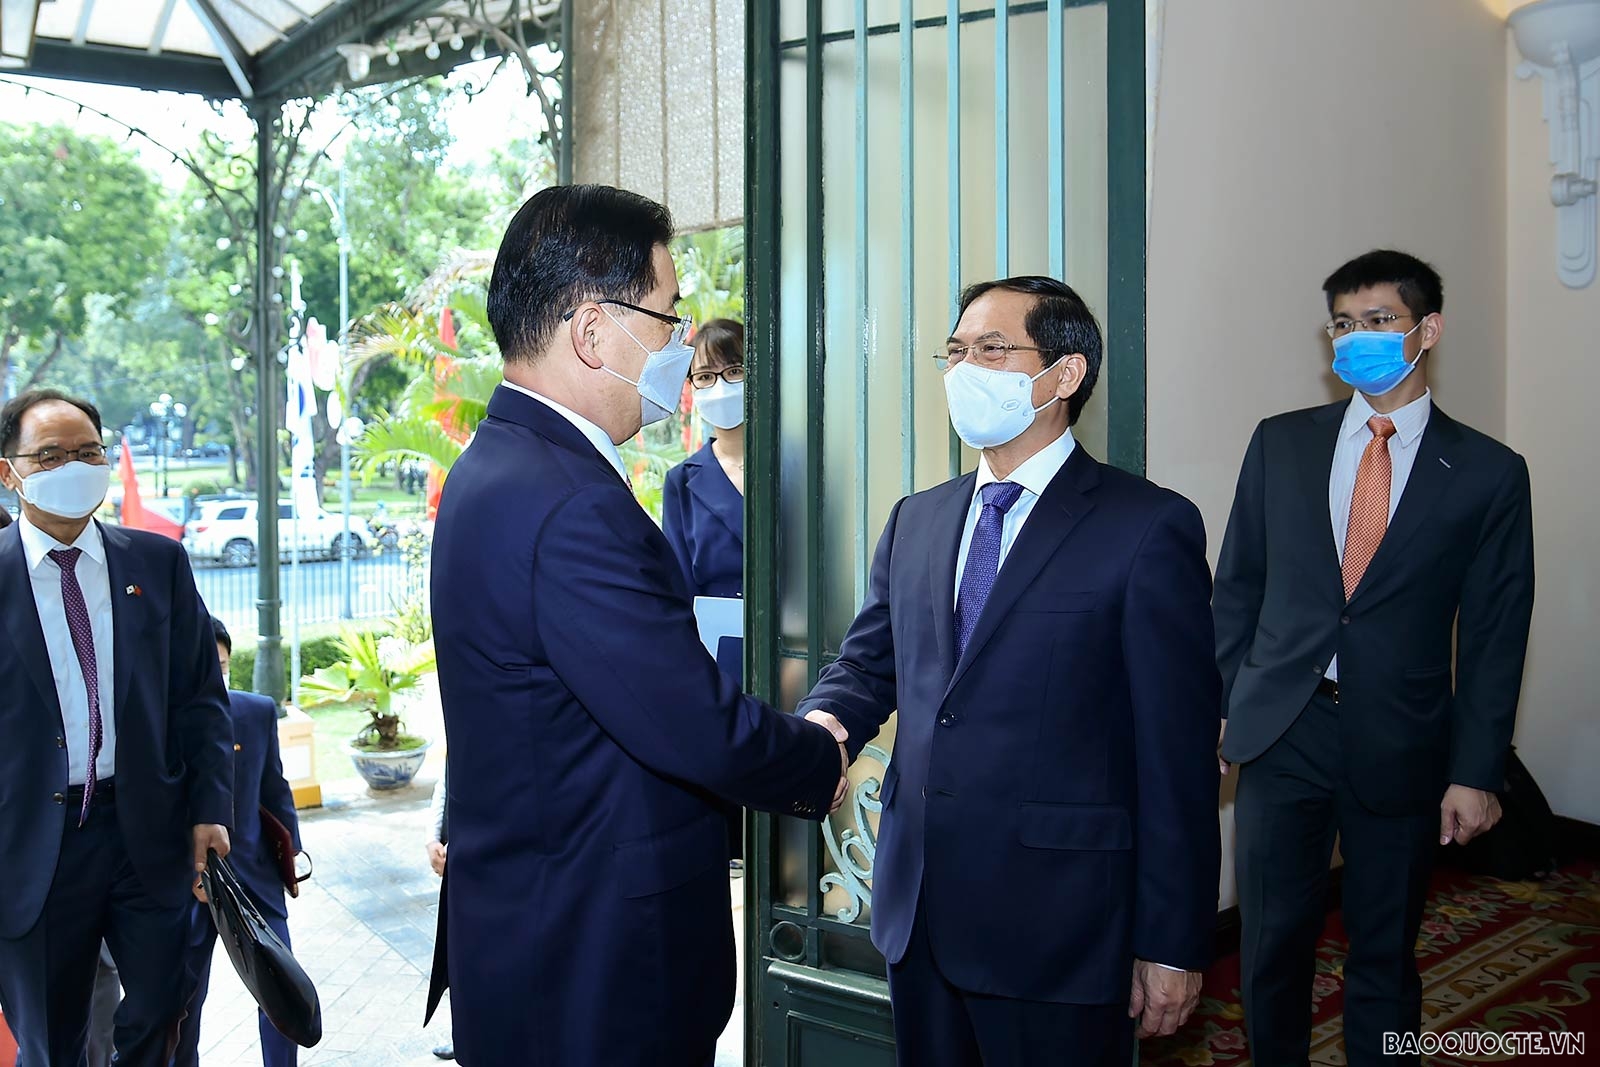 Bộ trưởng Ngoại giao Bùi Thanh Sơn đón, hội đàm với Bộ trưởng Ngoại giao Hàn Quốc Chung Eui Yong